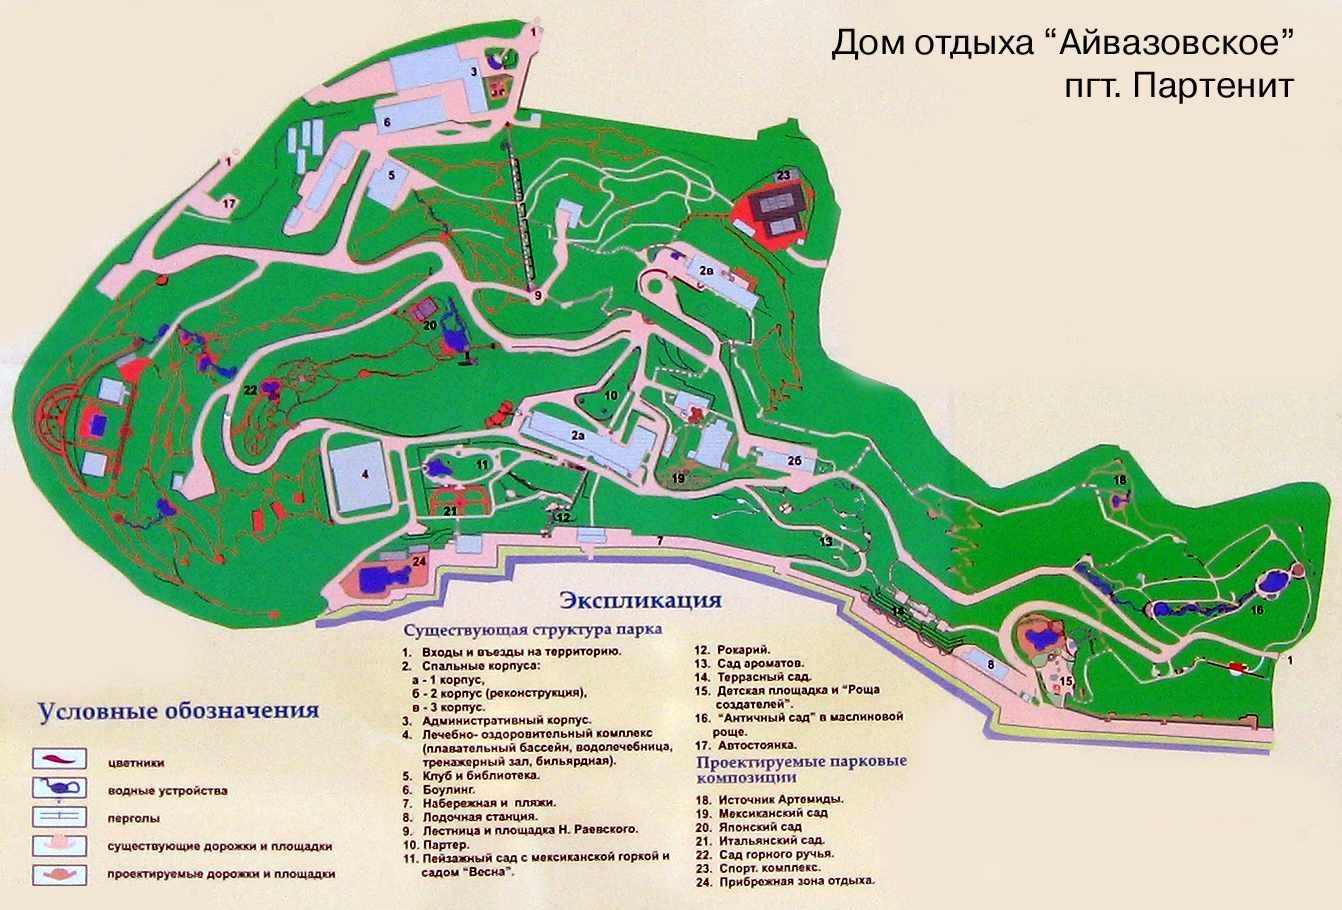 Схема санатория "Айвазовское"